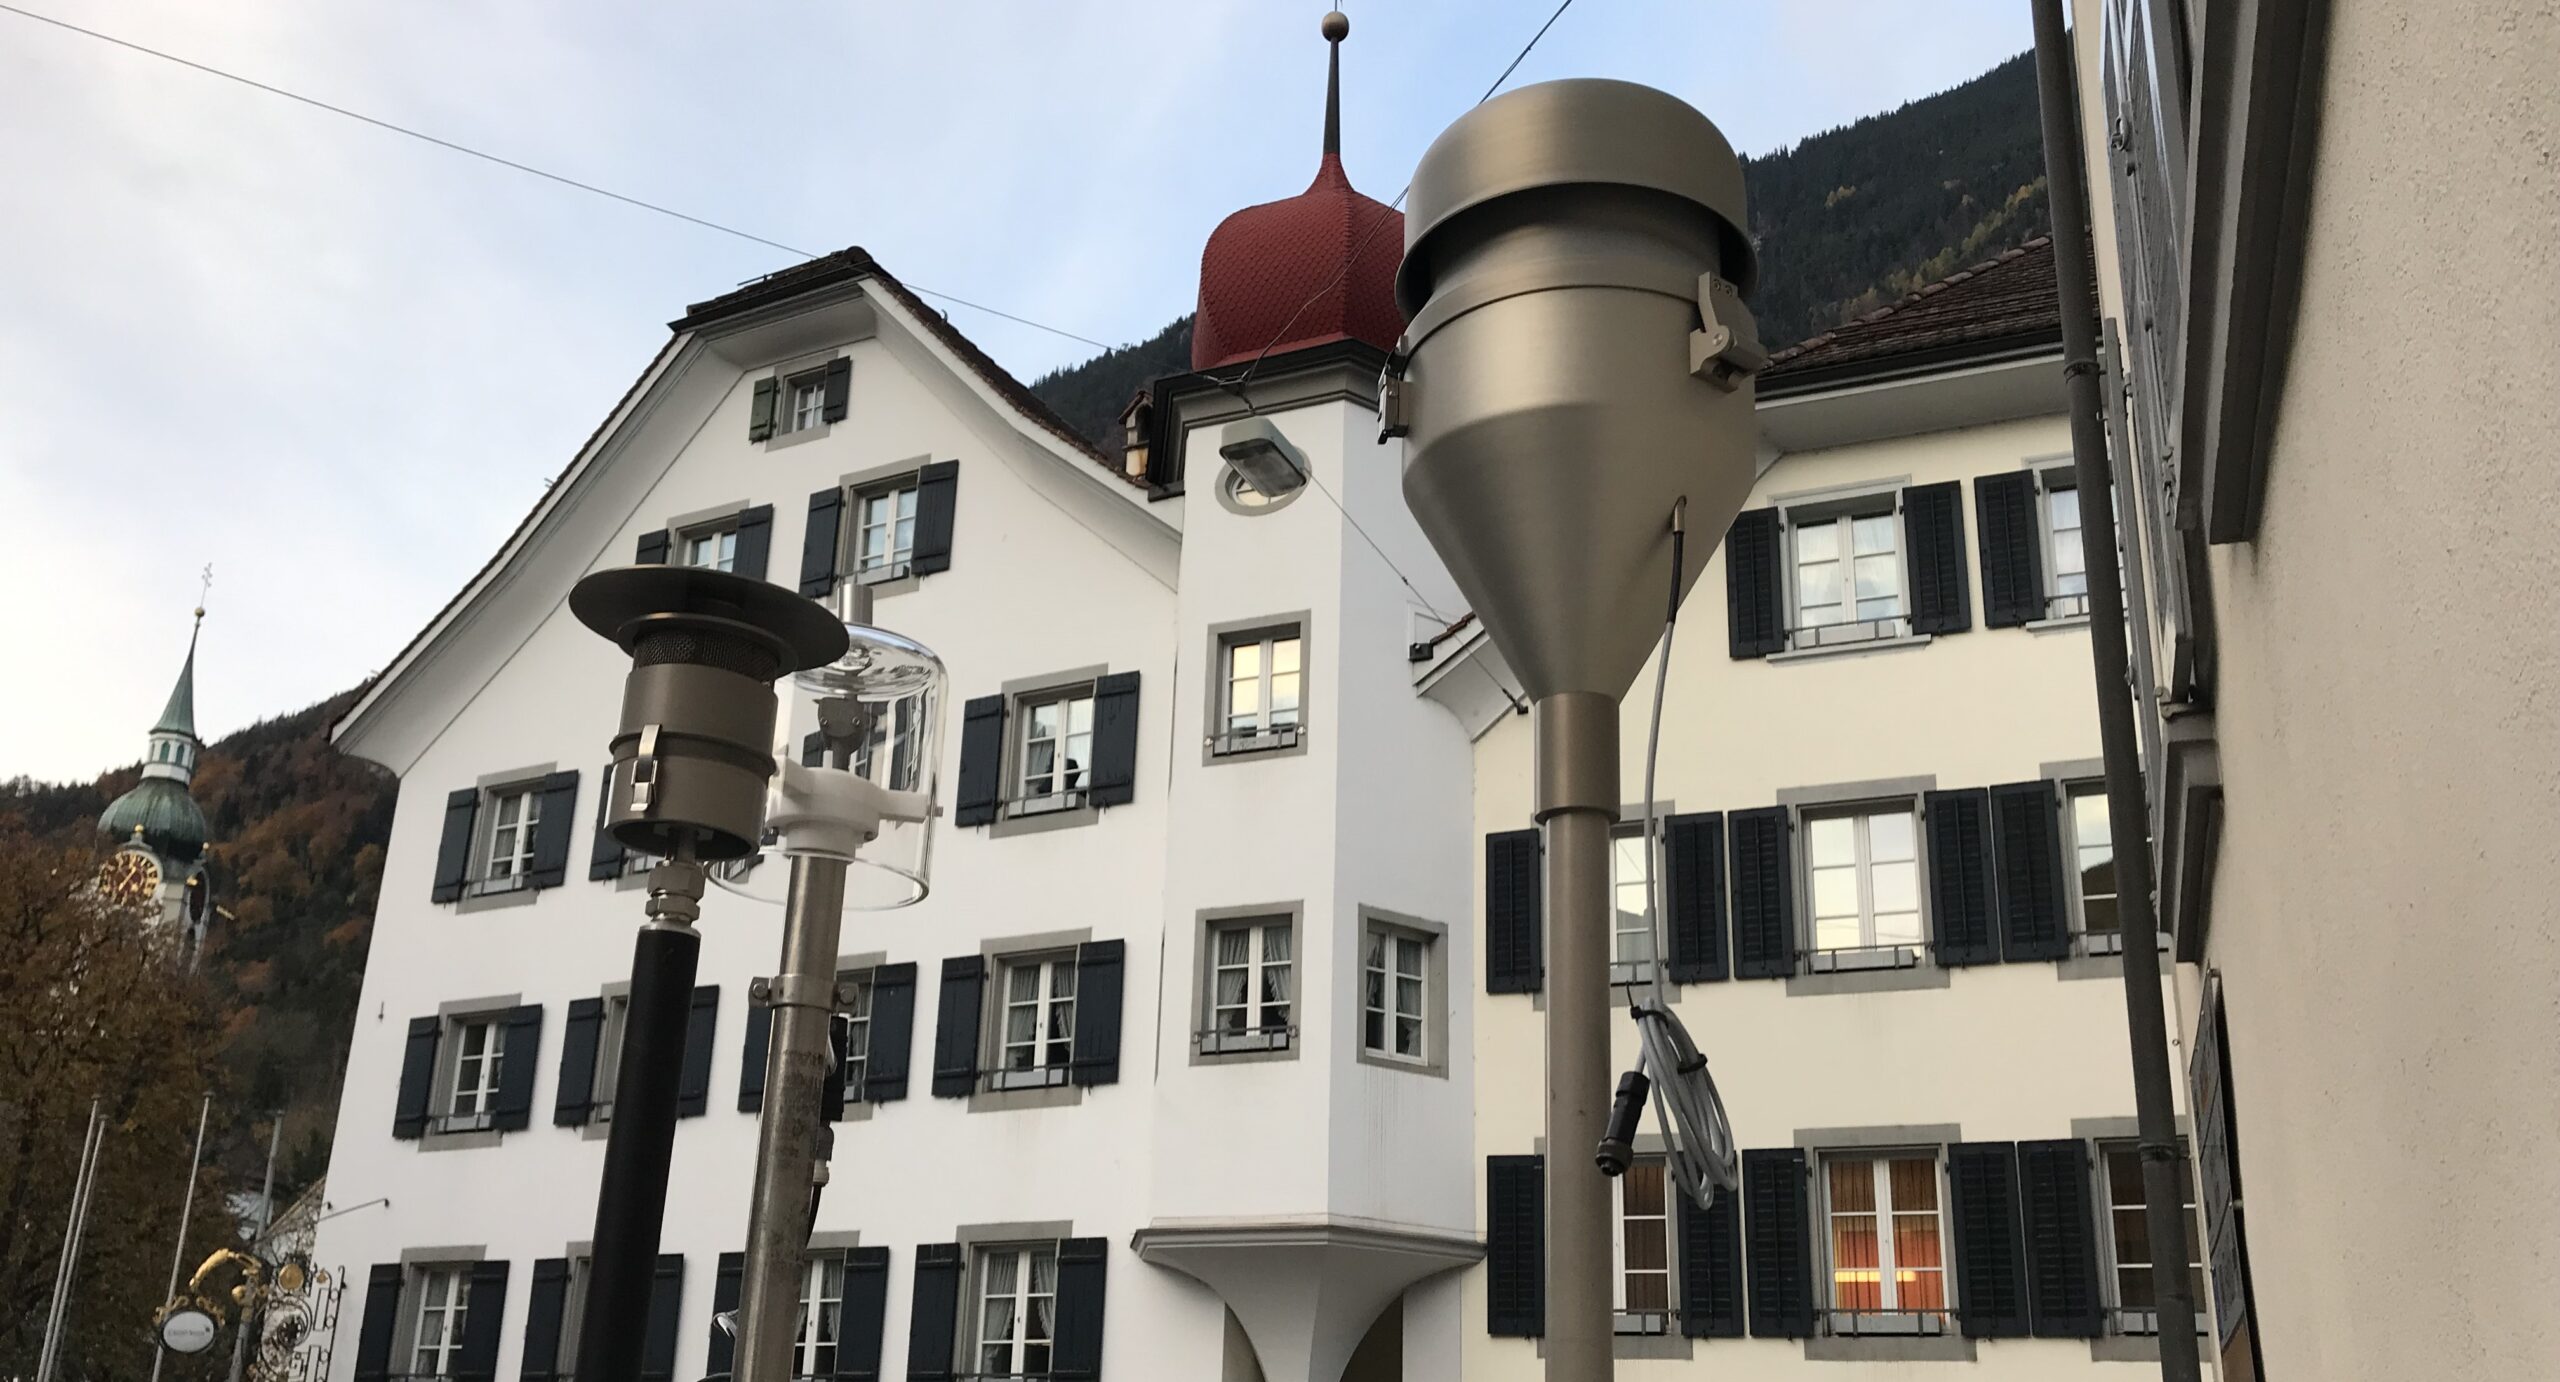 Unzureichende Luftqualität im Zentrum von Altdorf: WOV soll Besserung bringen